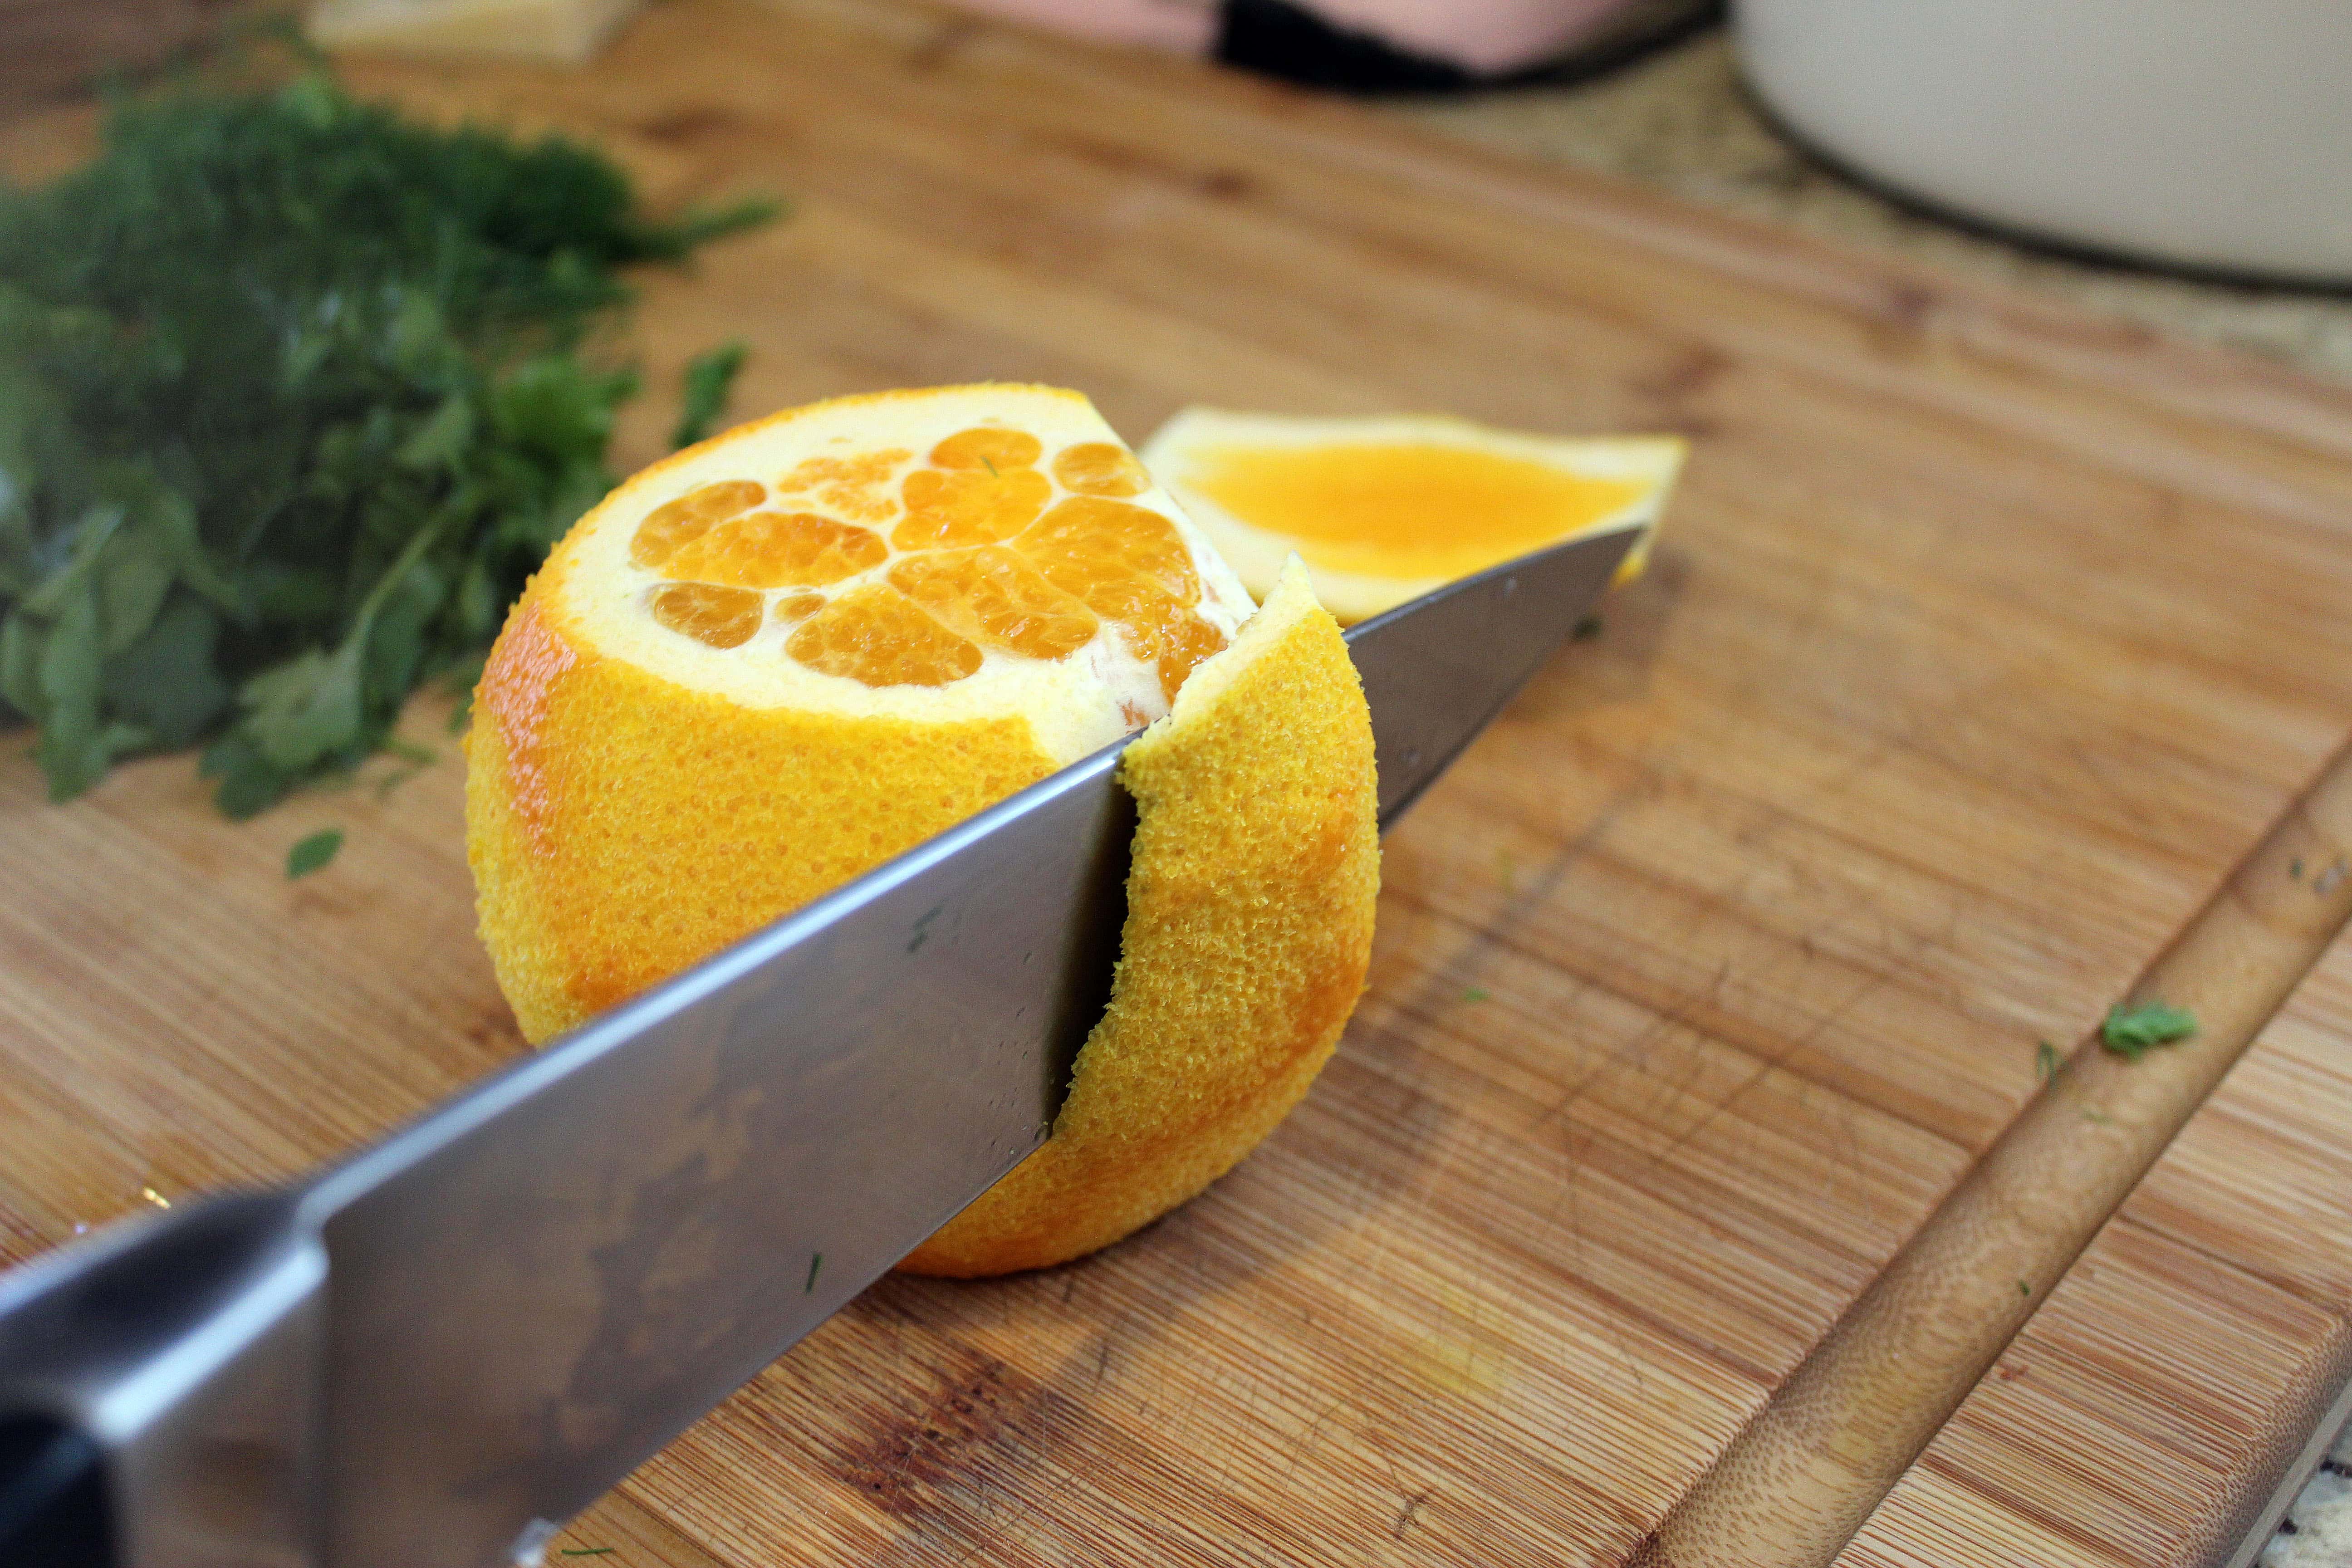 Cut off sides of orange peel